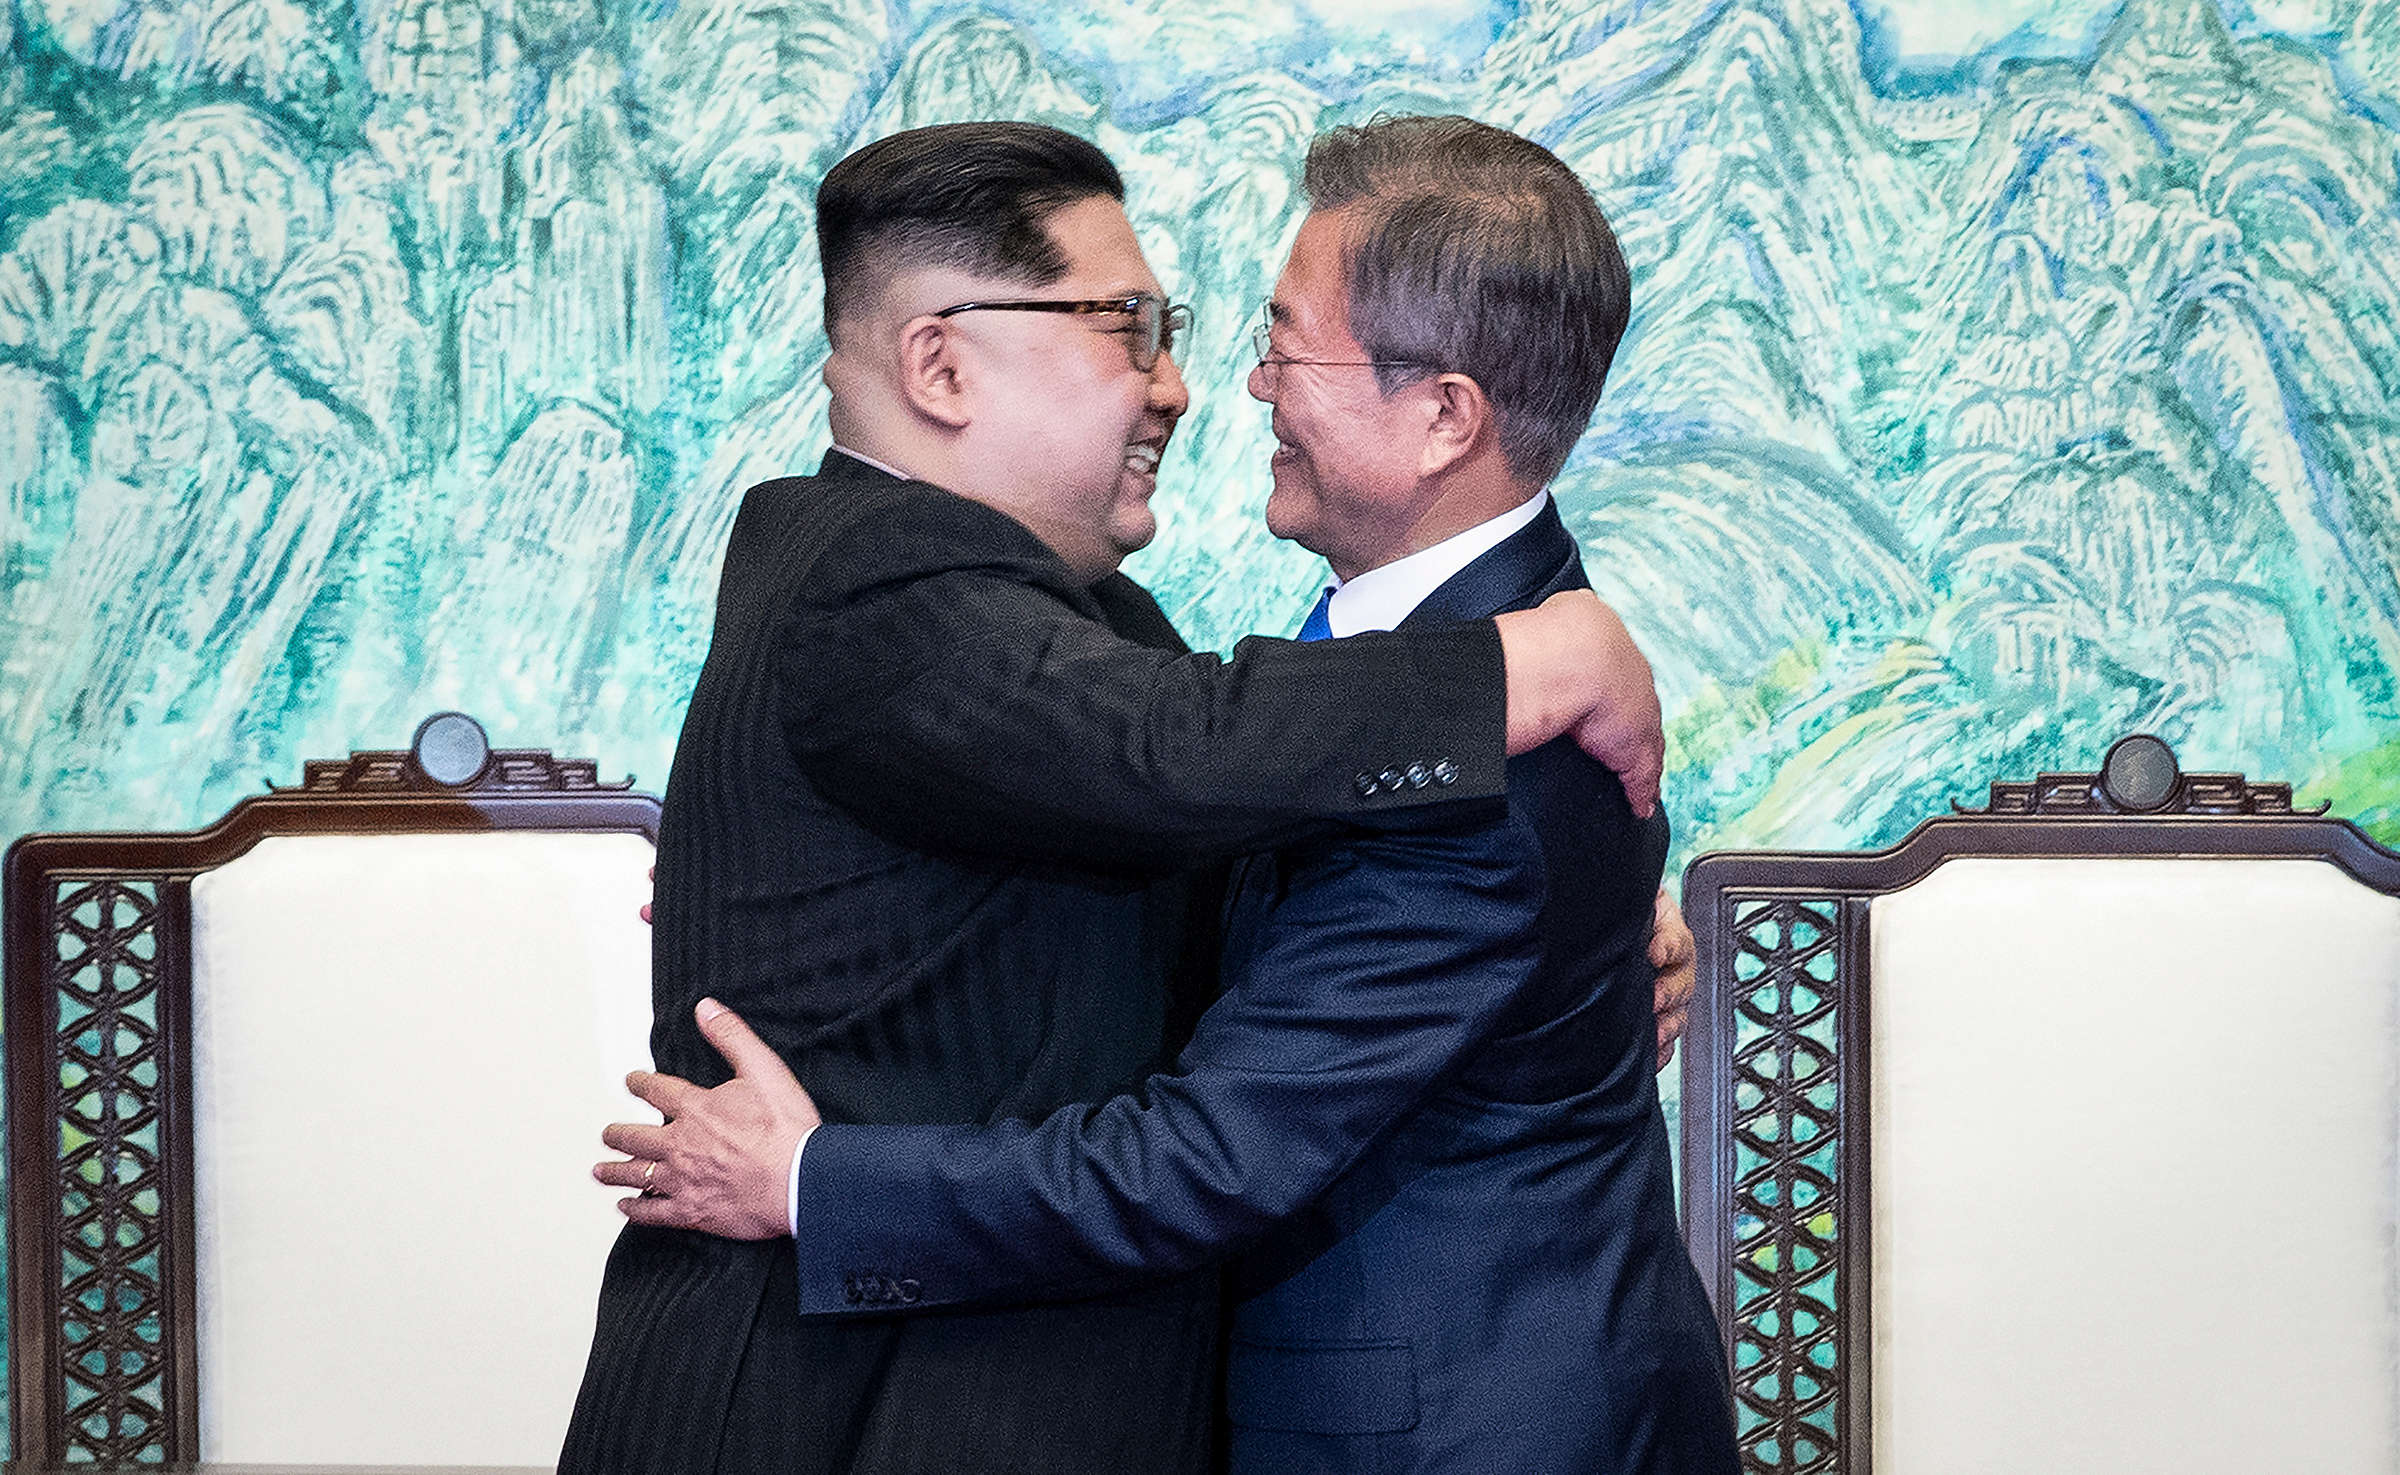 Лидер КНДР Ким Чен Ын (слева) и президент Южной Кореи Мун Чжэ Ин во время встречи 27 апреля 2018 года. Все контакты между странами были прекращены в 2016 году, когда Сеул в ответ на ядерные и ракетные испытания Пхеньяна решил выйти из проекта промышленной зоны Кэсон в Северной Корее
